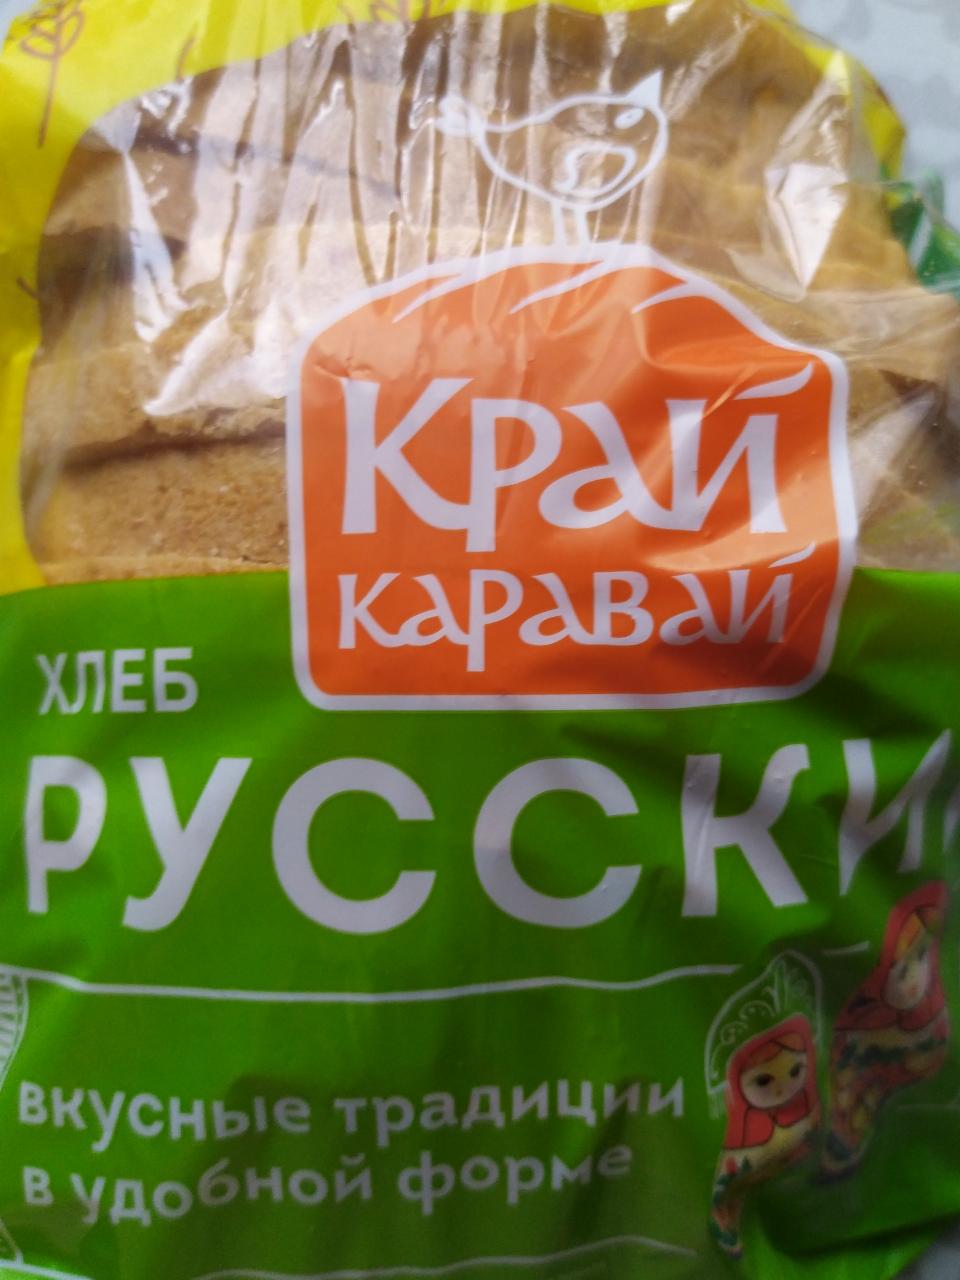 Фото - хлеб русский подовый Край каравай